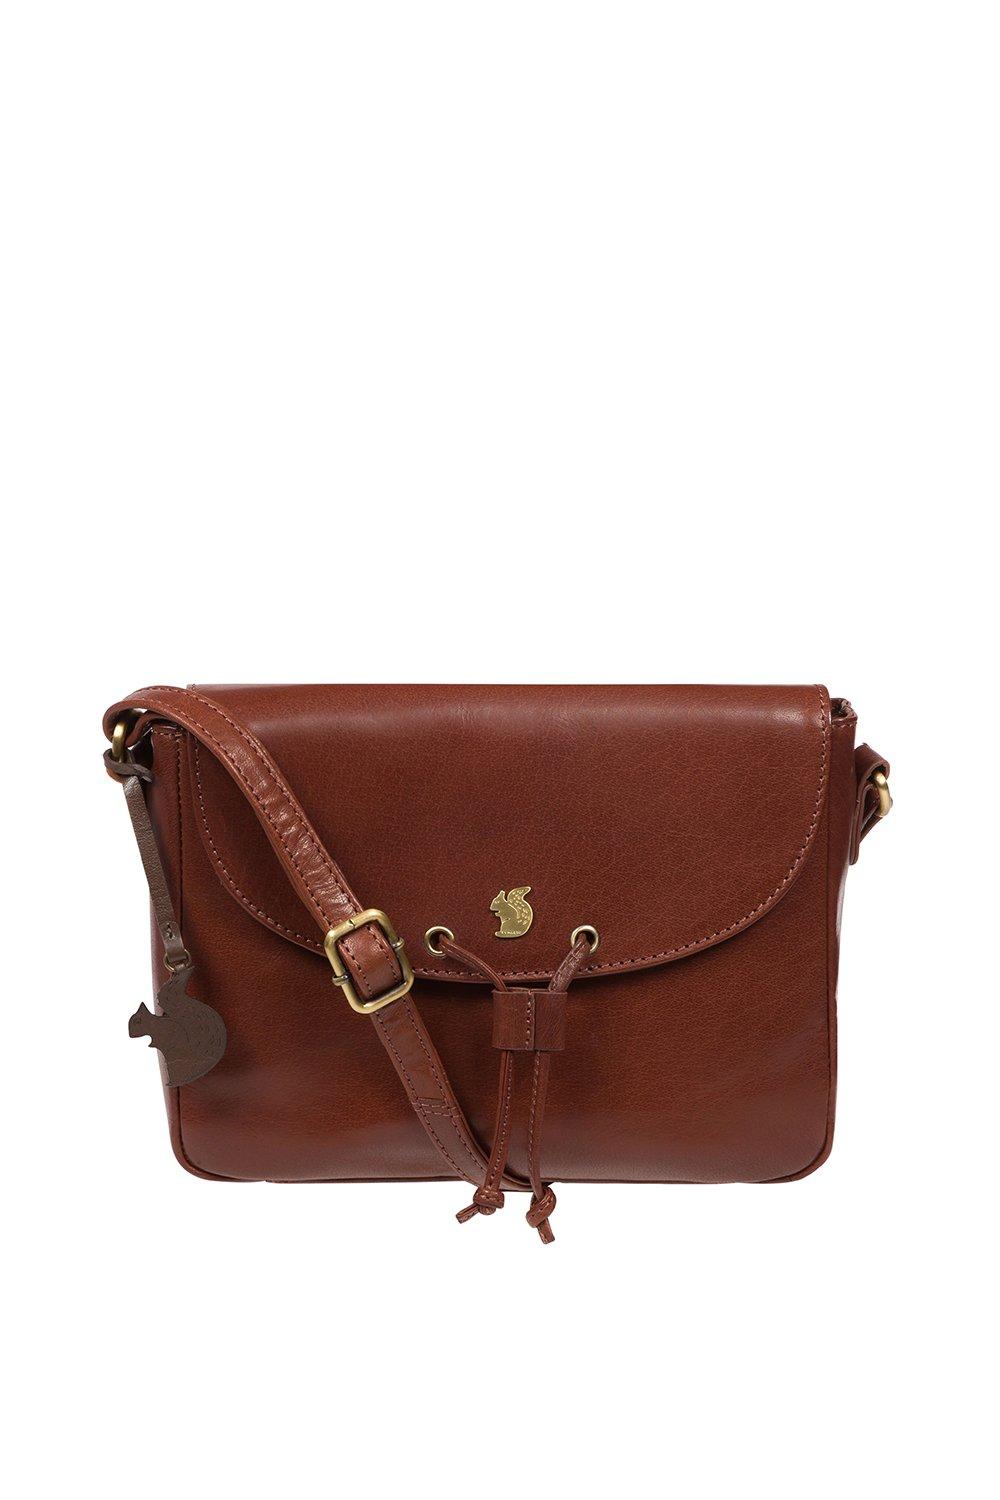 Кожаная сумка через плечо 'Ula' Conkca London, коричневый